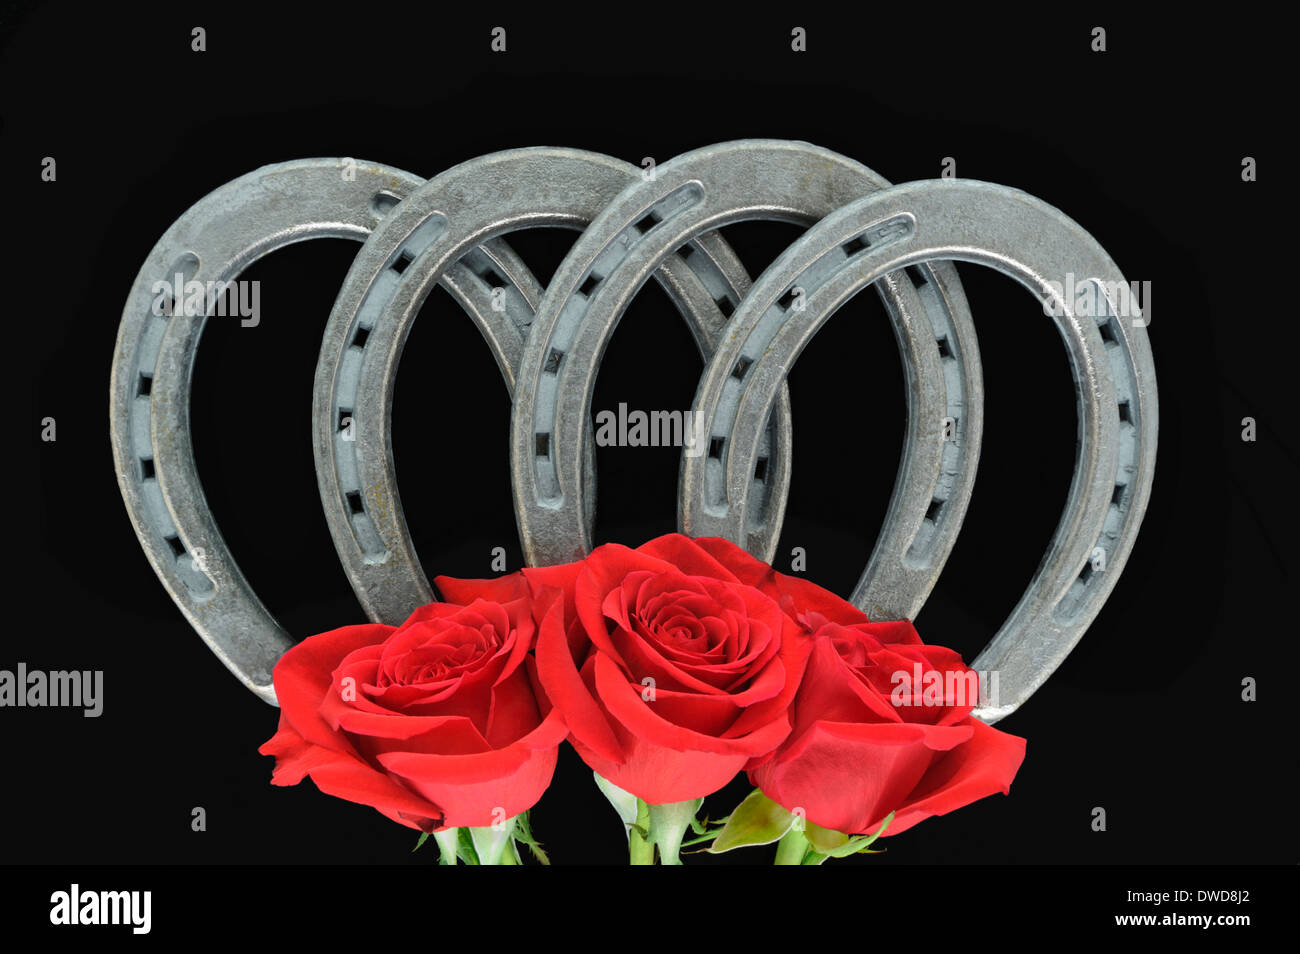 Quatre fers, avec trois roses rouges, dans une arche symétrique pour la bonne fortune et la chance, un portrait sur fond noir. Banque D'Images